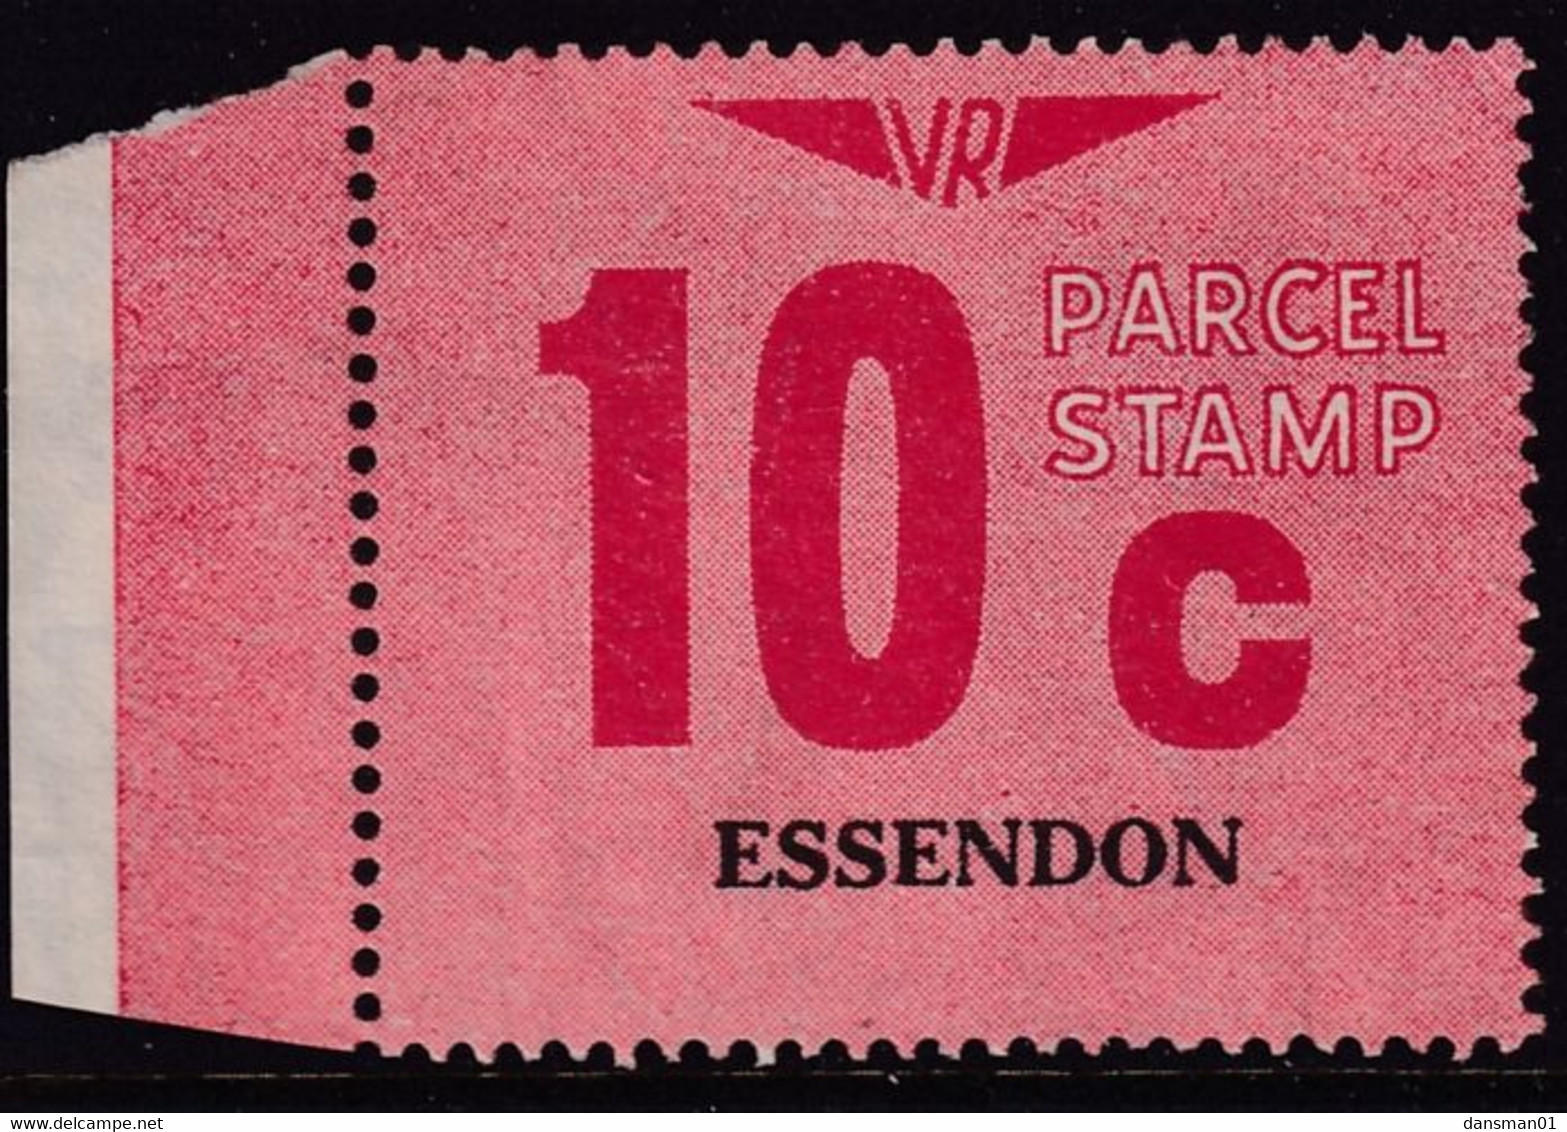 Victoria 1966 Railway Parcel Stamp 10c ESSENDON Used - Abarten Und Kuriositäten